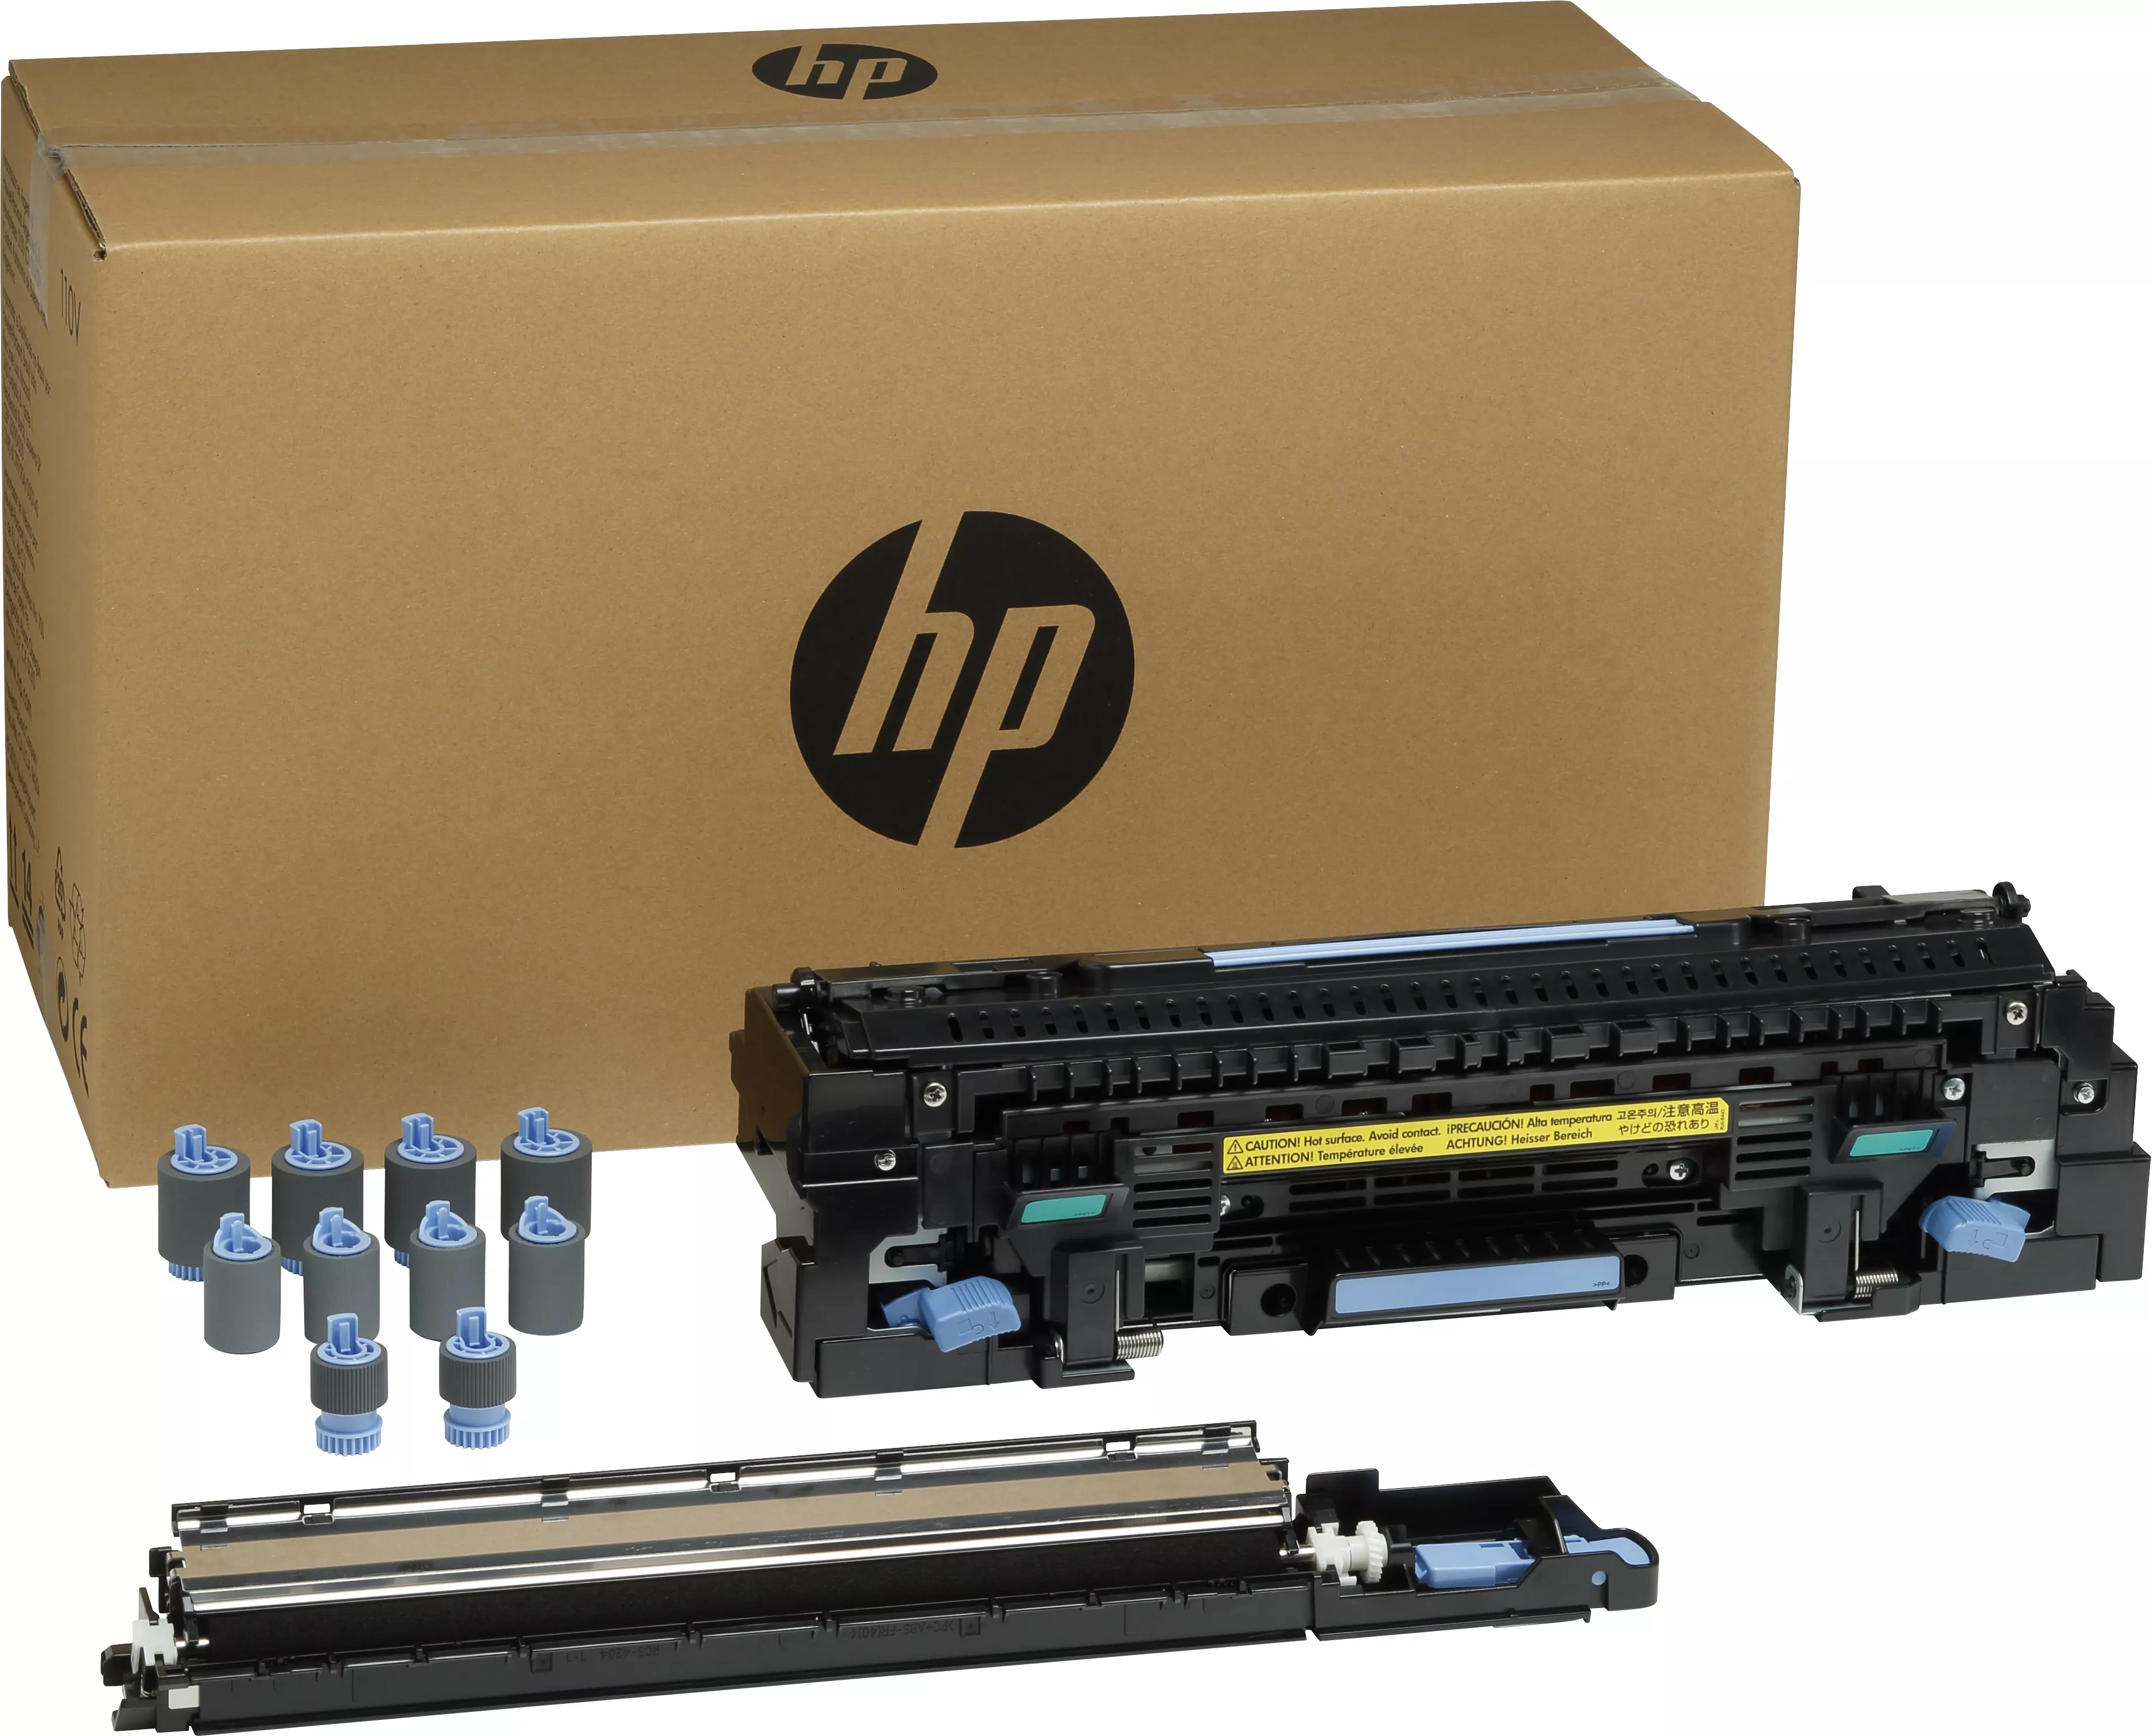 Achat HP original C2H57A fuser maintenance kit C2H57A standard au meilleur prix